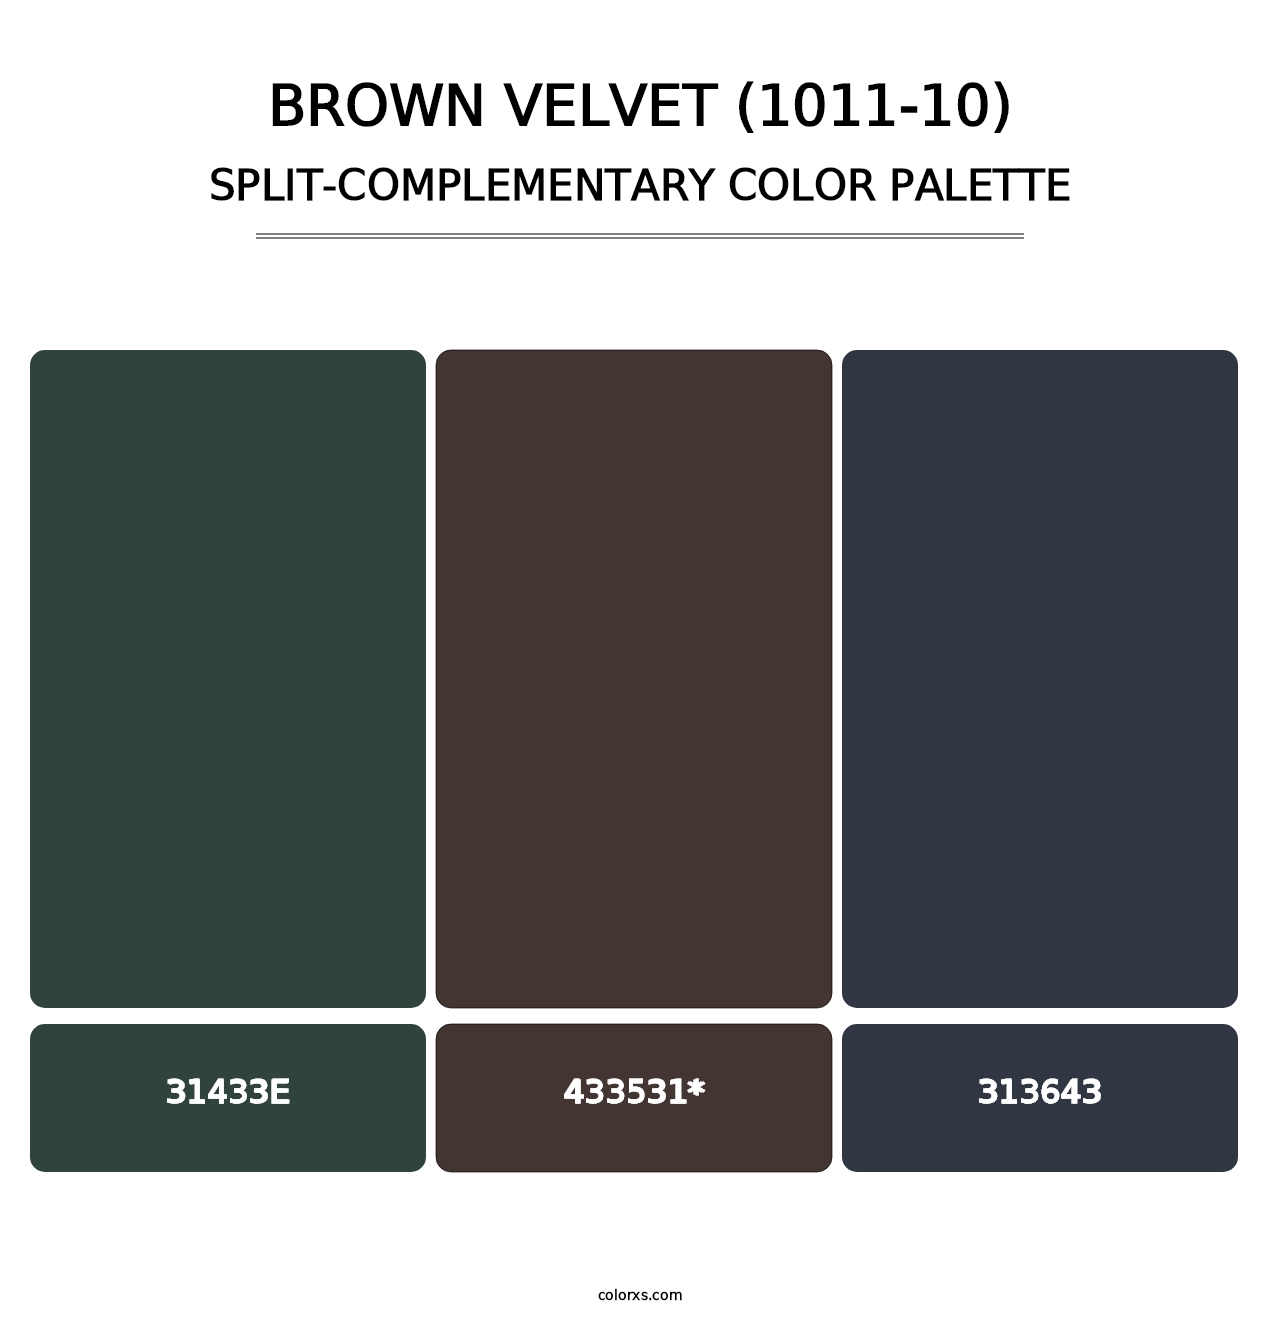 Brown Velvet (1011-10) - Split-Complementary Color Palette